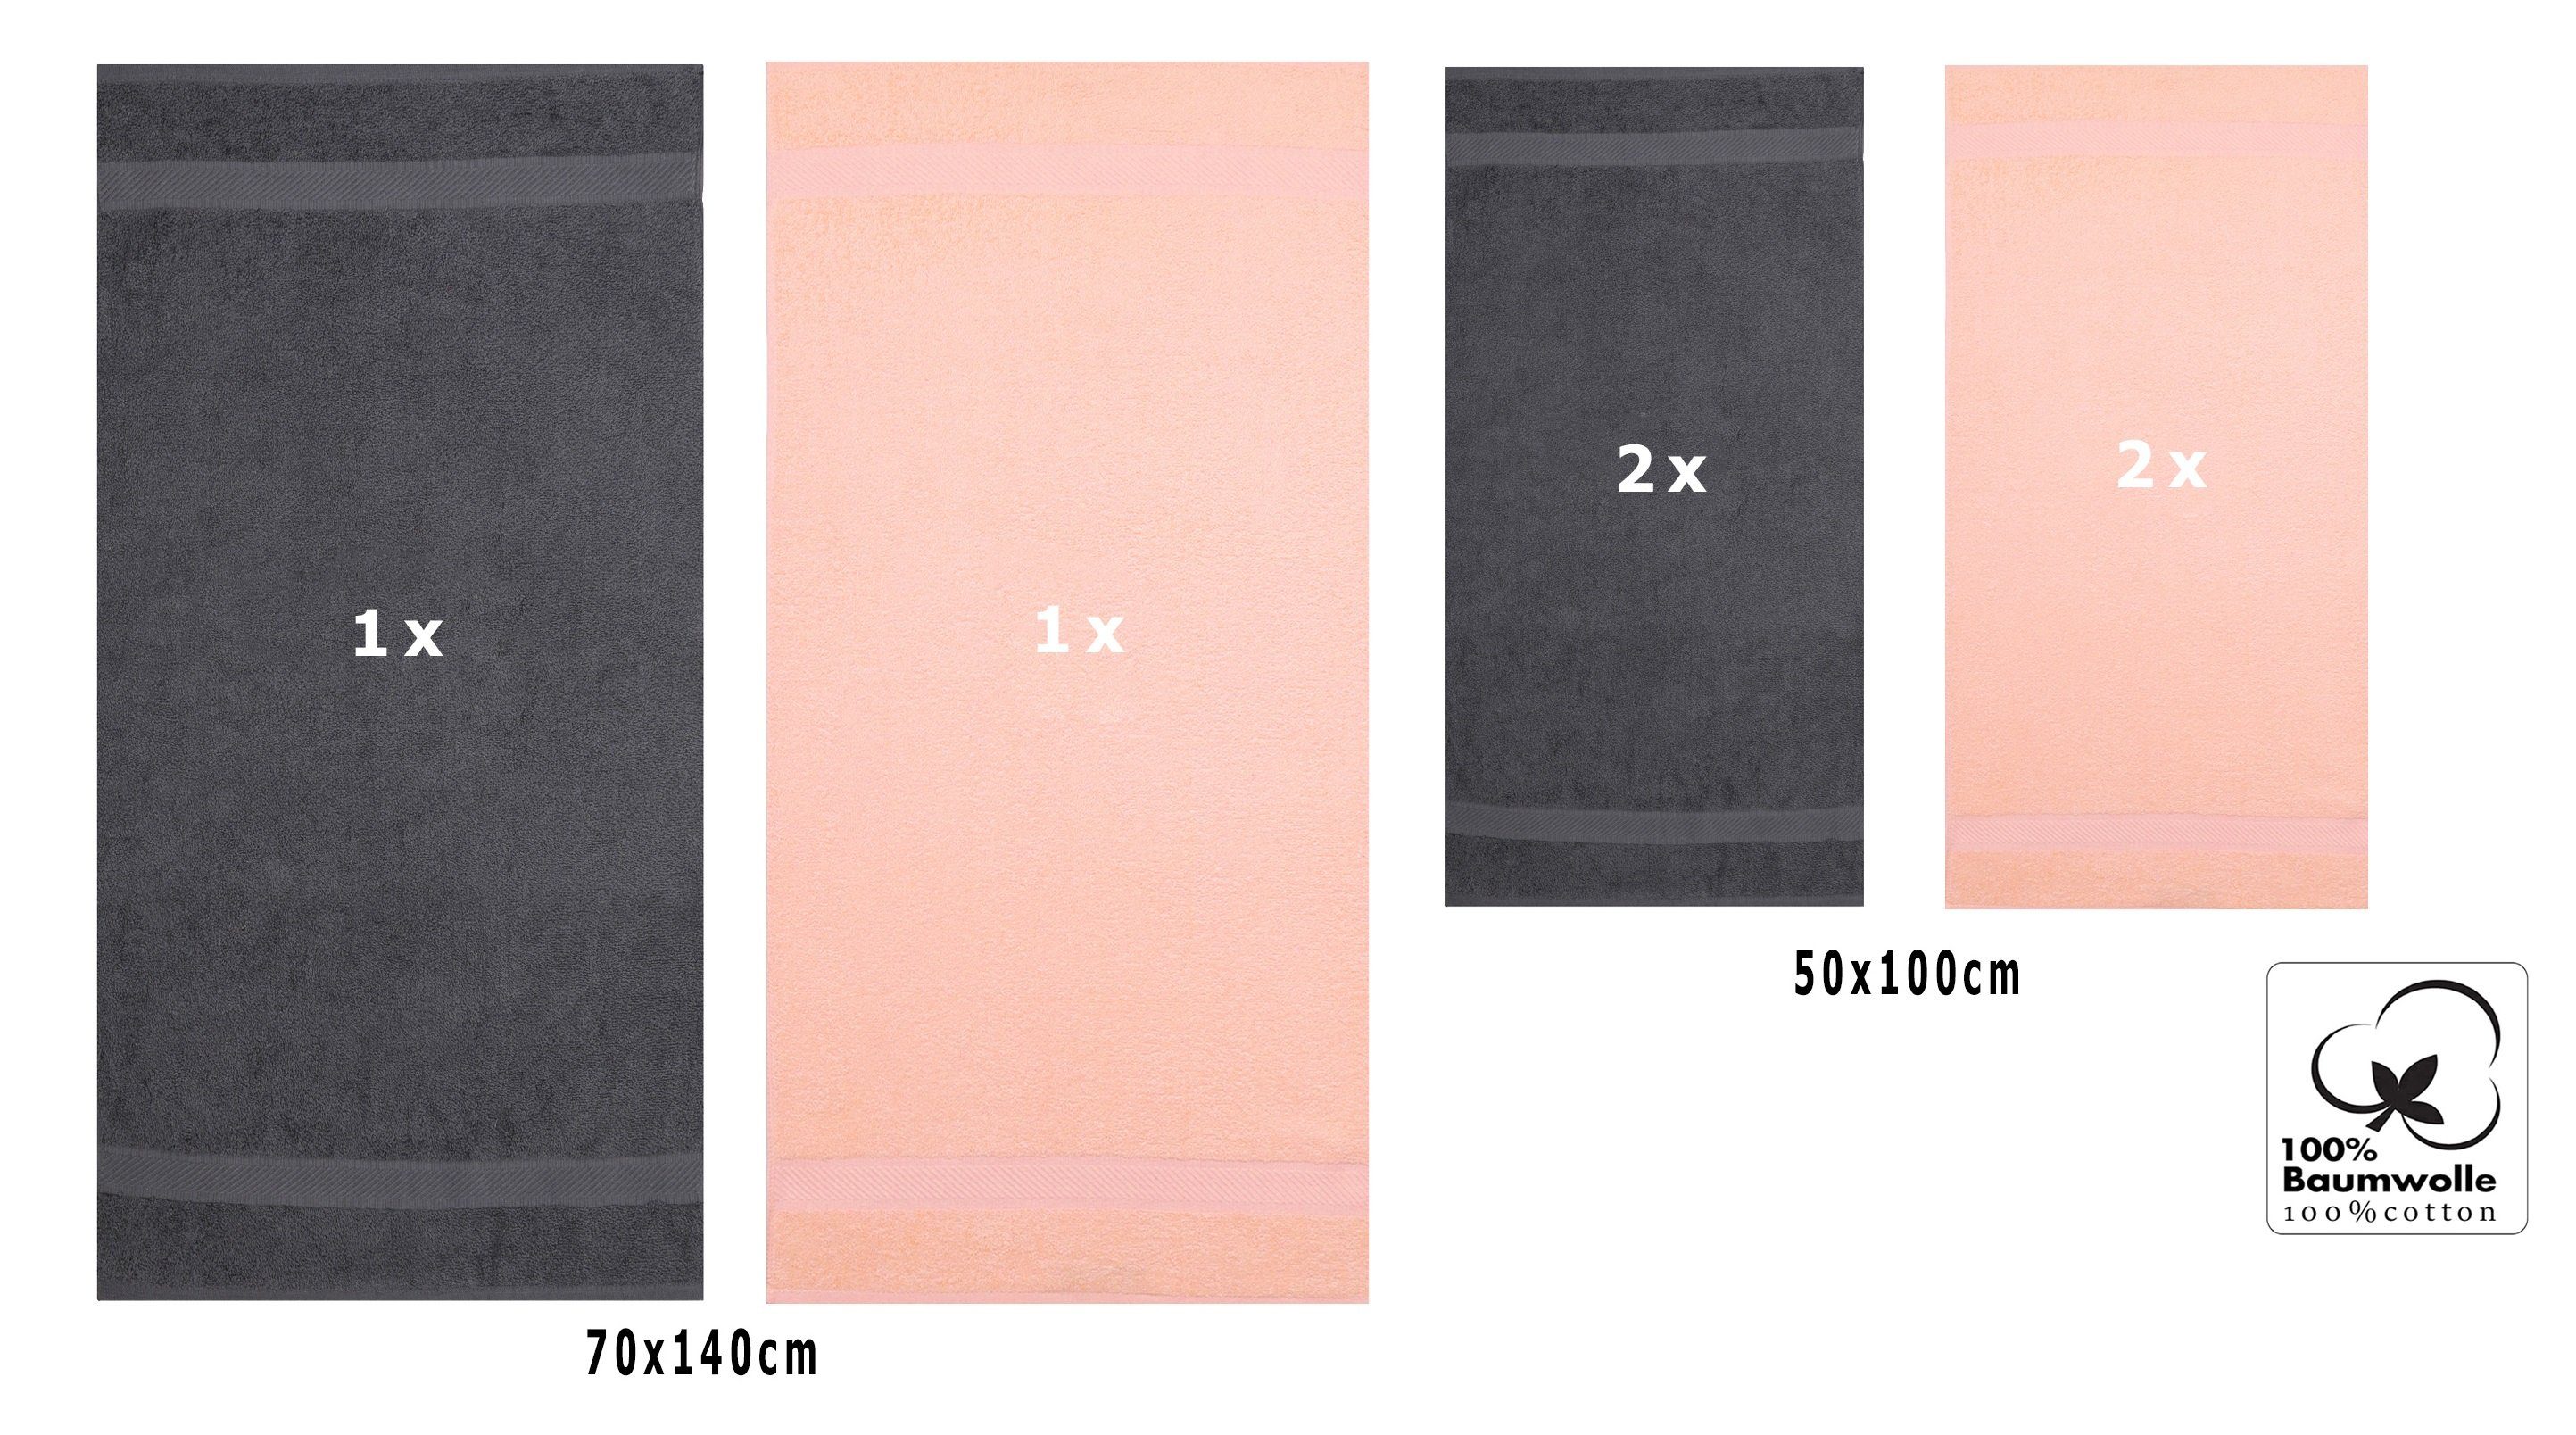 Handtuch Betz 2x 100% Baumwolle Palermo 70x140 anthrazit/apricot Set 6er Liegetücher Handtücher, cm 4x